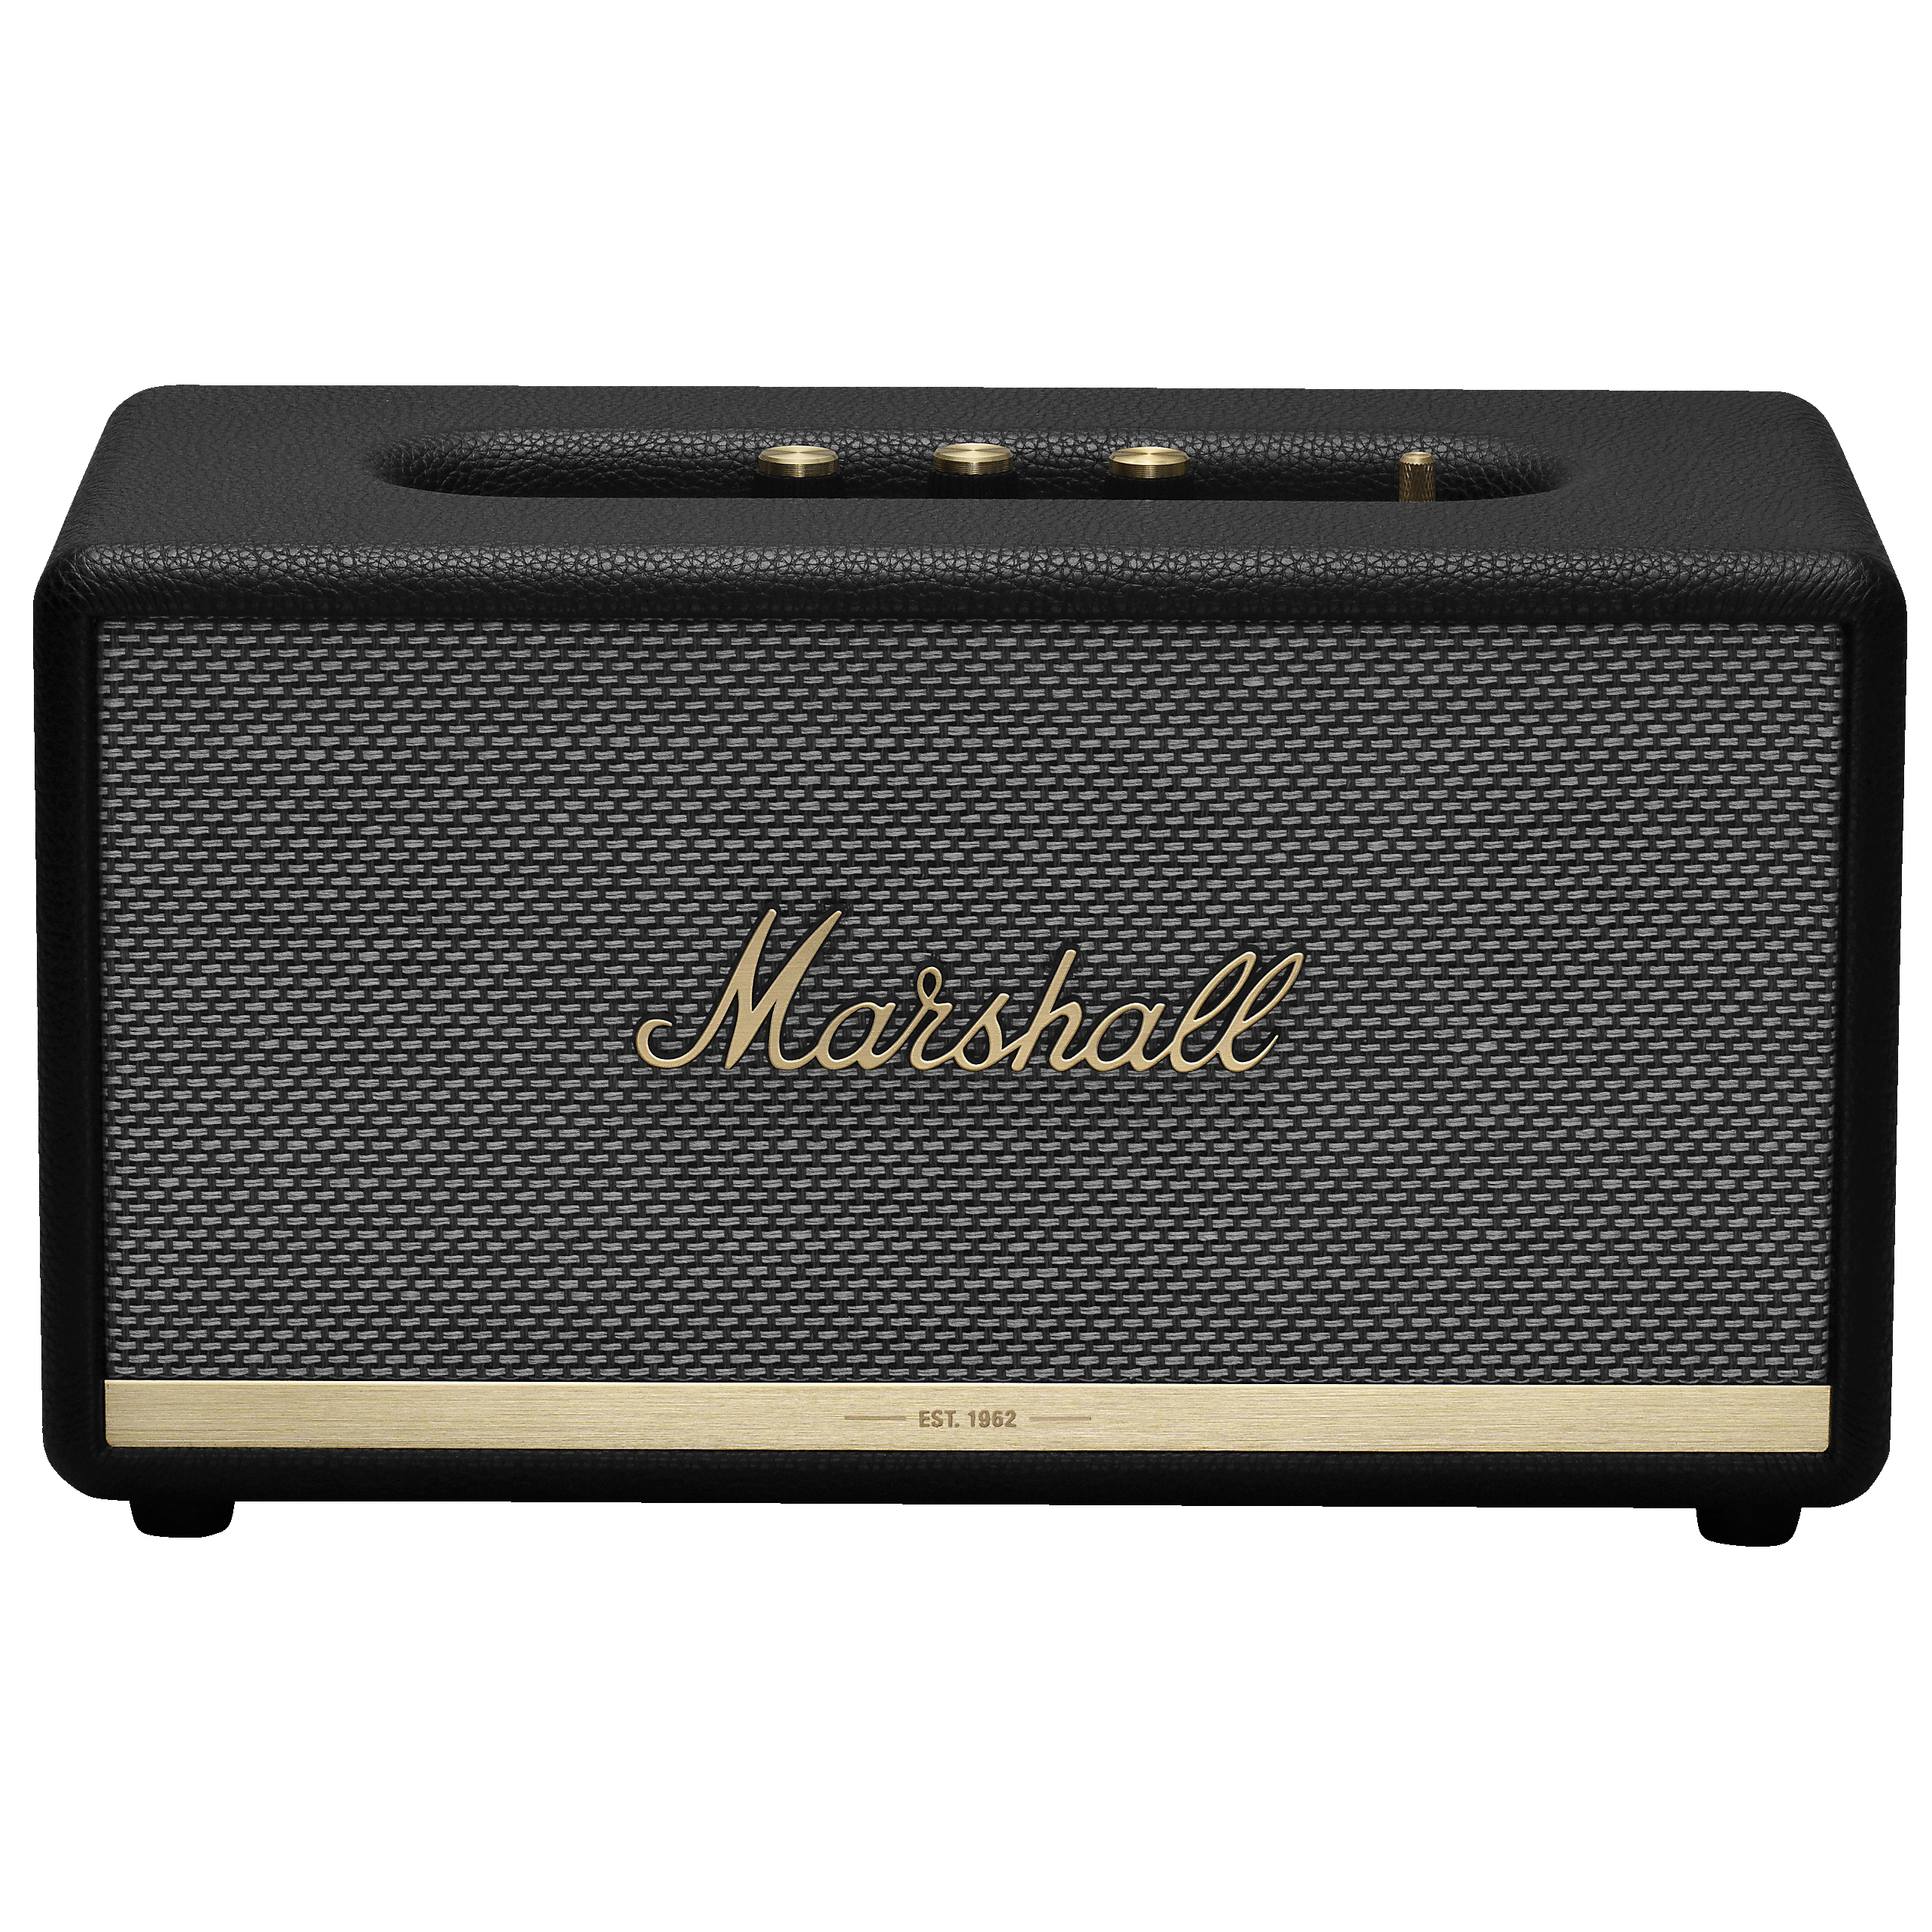 Marshall Stanmore BT II högtalare (svart) - Högtalare - Elgiganten